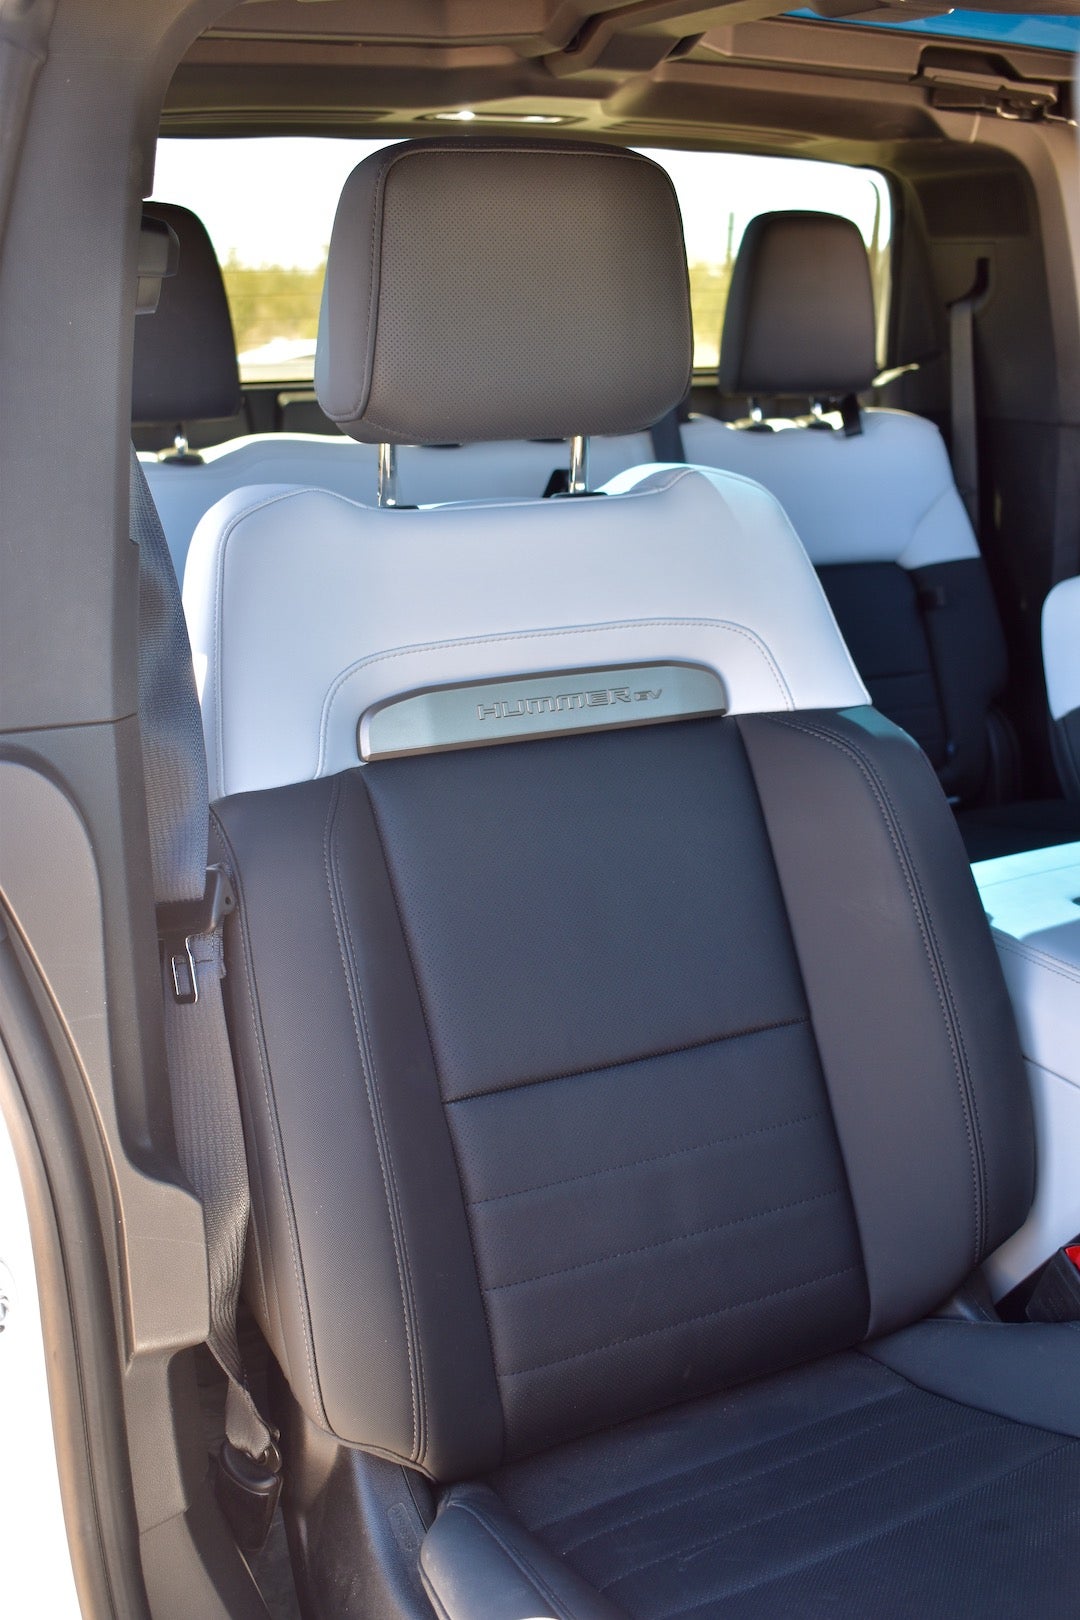 2022 GMC Hummer EV Edition 1 seat, <i>James Gilboy</i>